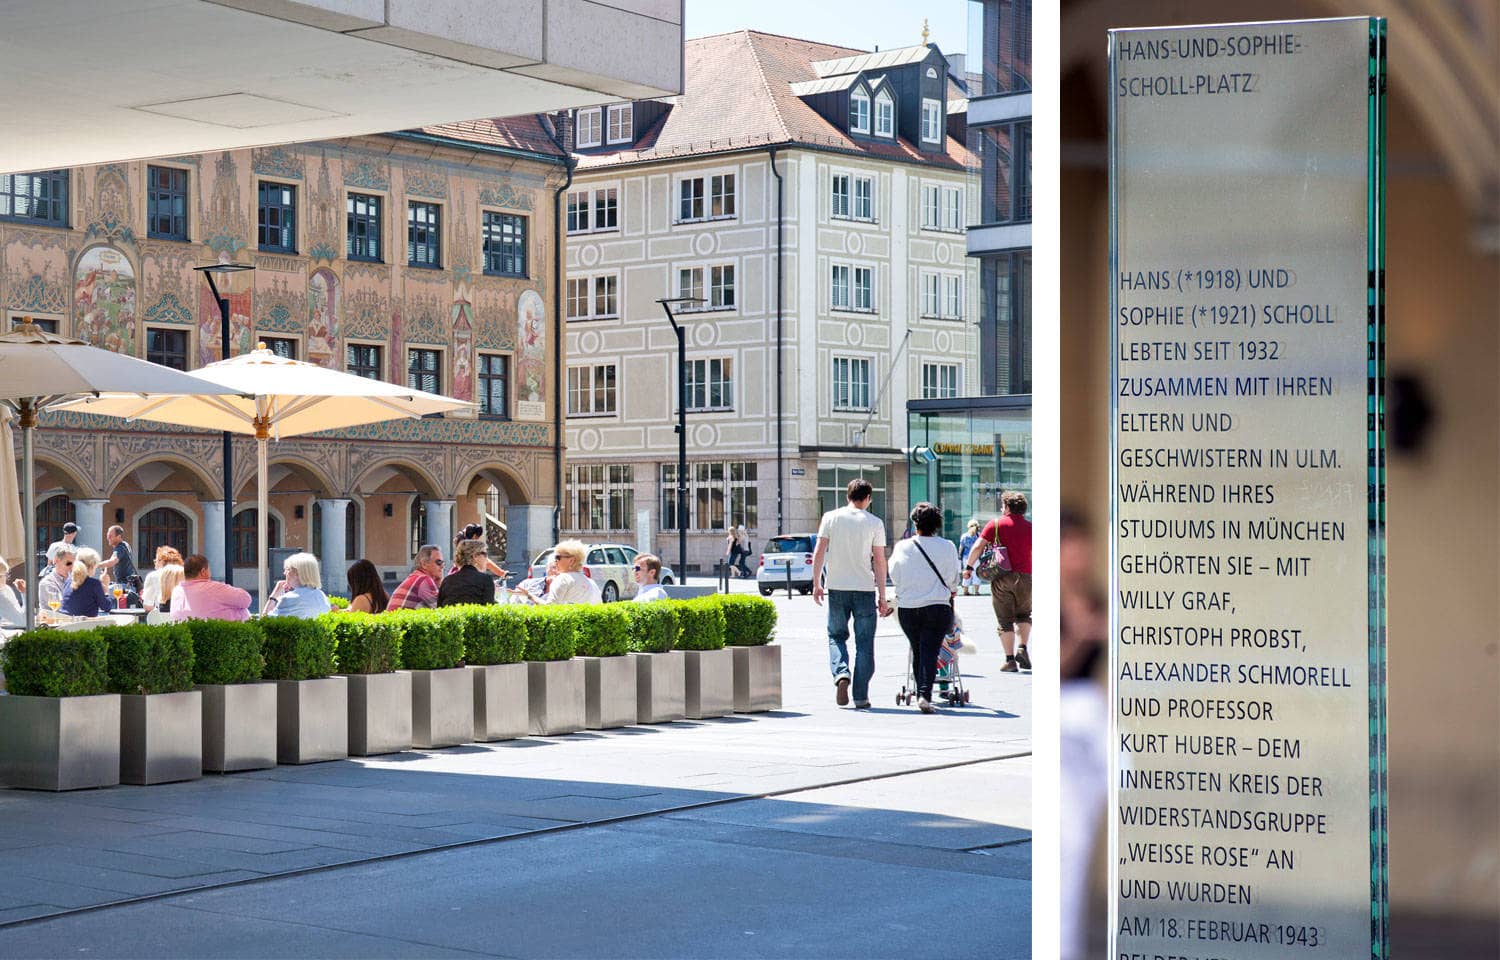 Hans-und-Sophie-Scholl-Platz mit einer Stele, auf der über die beiden Geschwister informiert wird.